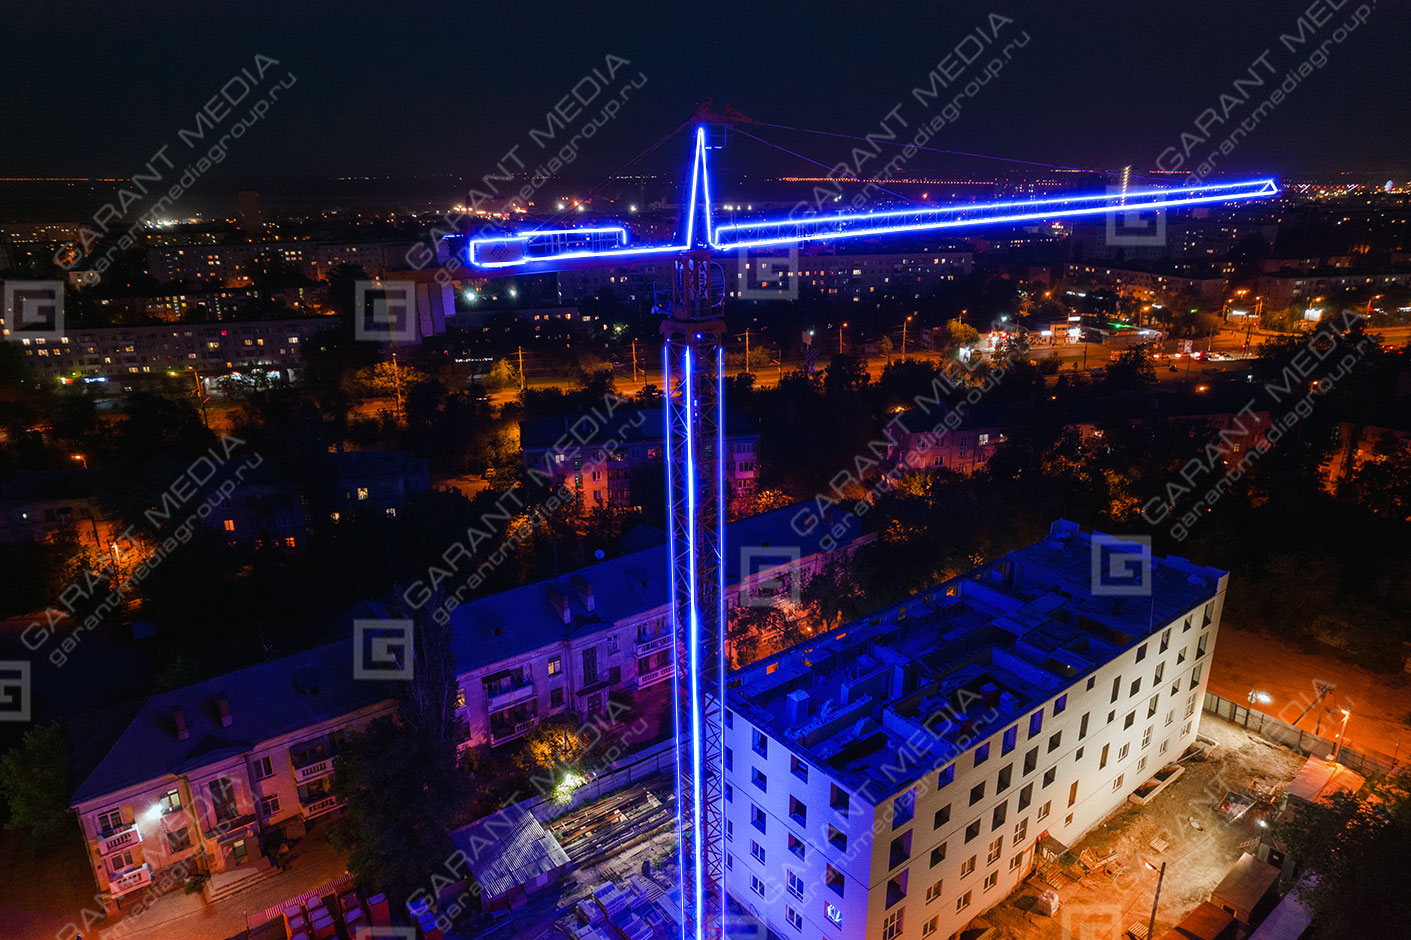 Светодиодное освещение башенного крана в Волгограде